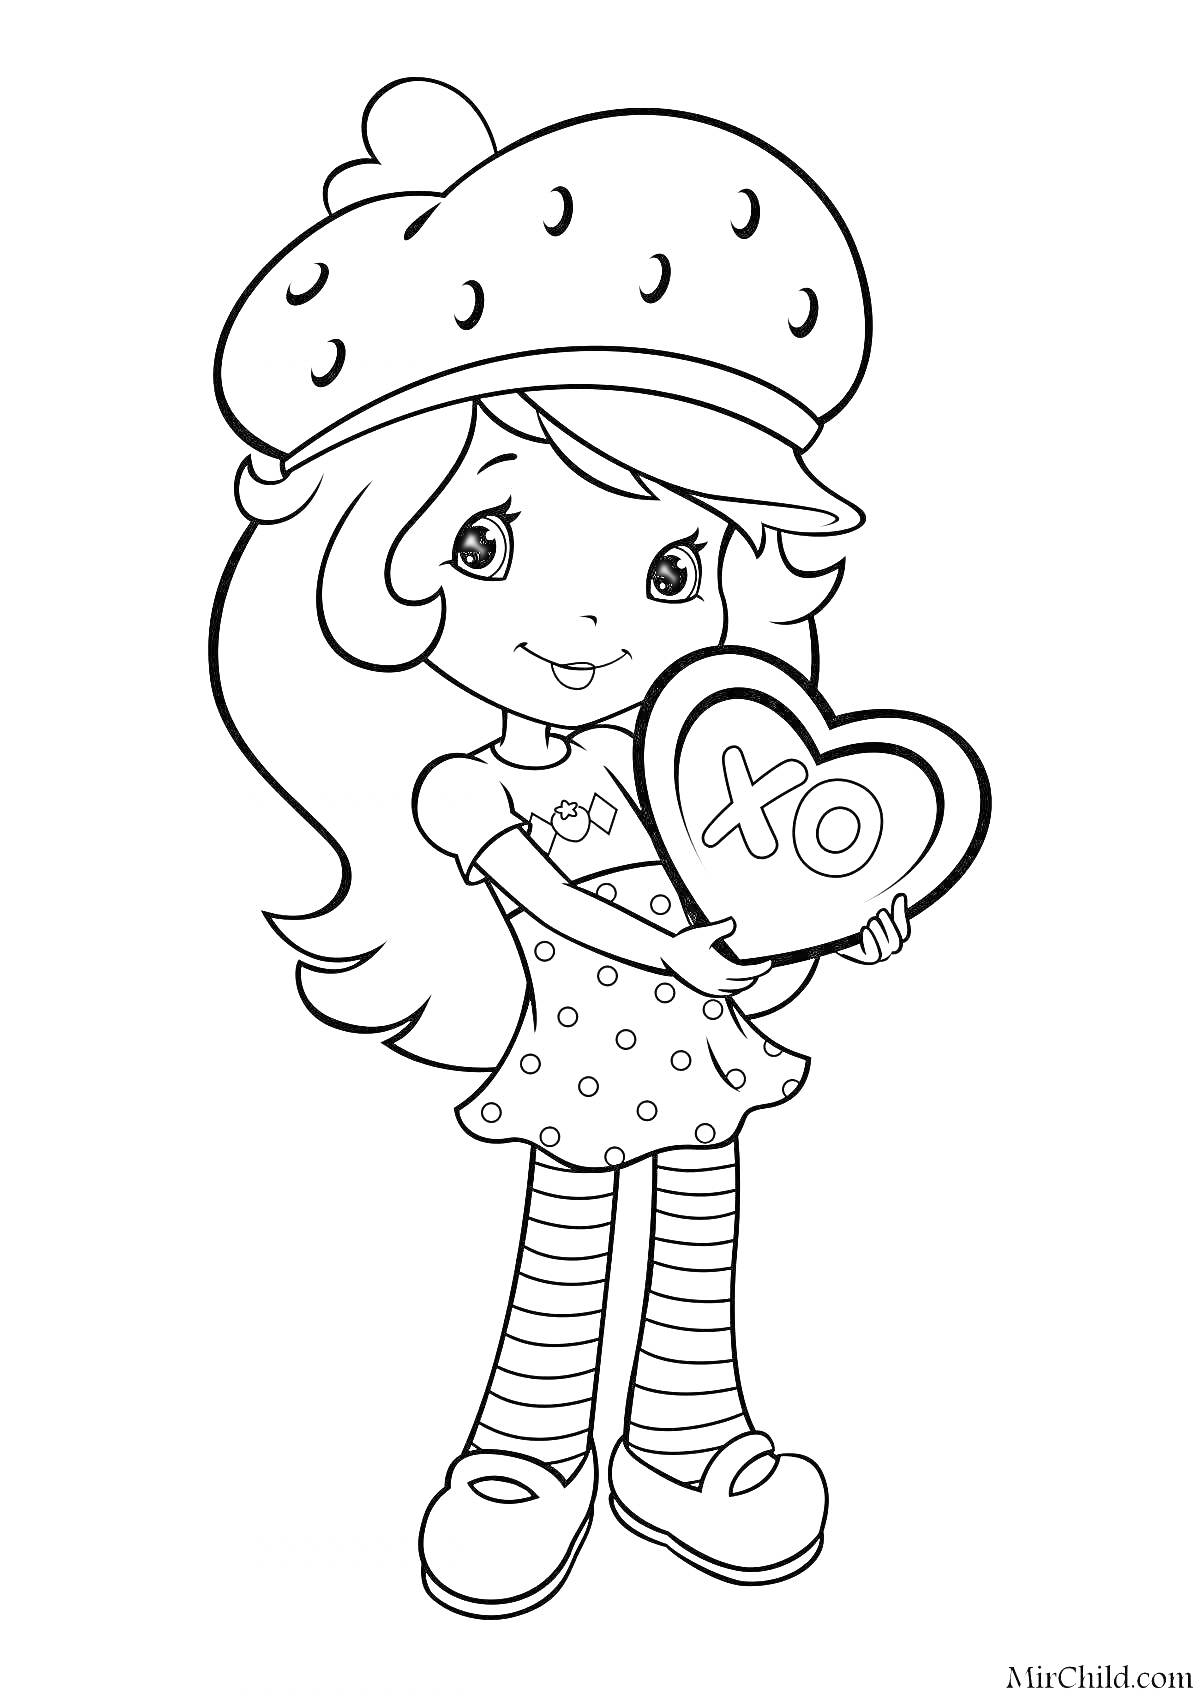 Раскраска Девочка в шапке в виде клубнички, с сердцем в руках, на котором надпись 